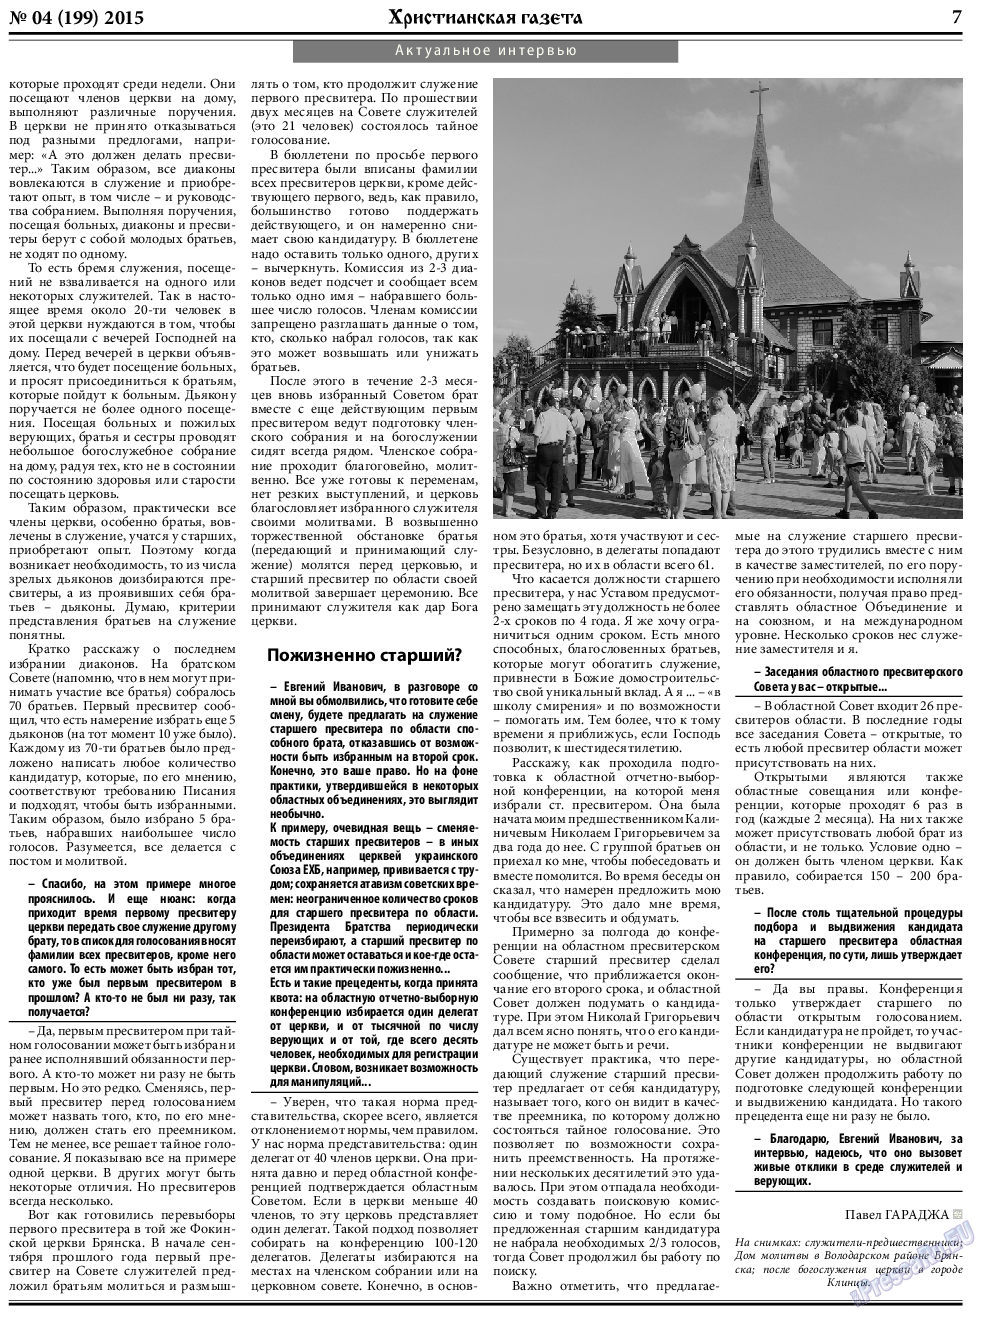 Христианская газета, газета. 2015 №4 стр.7